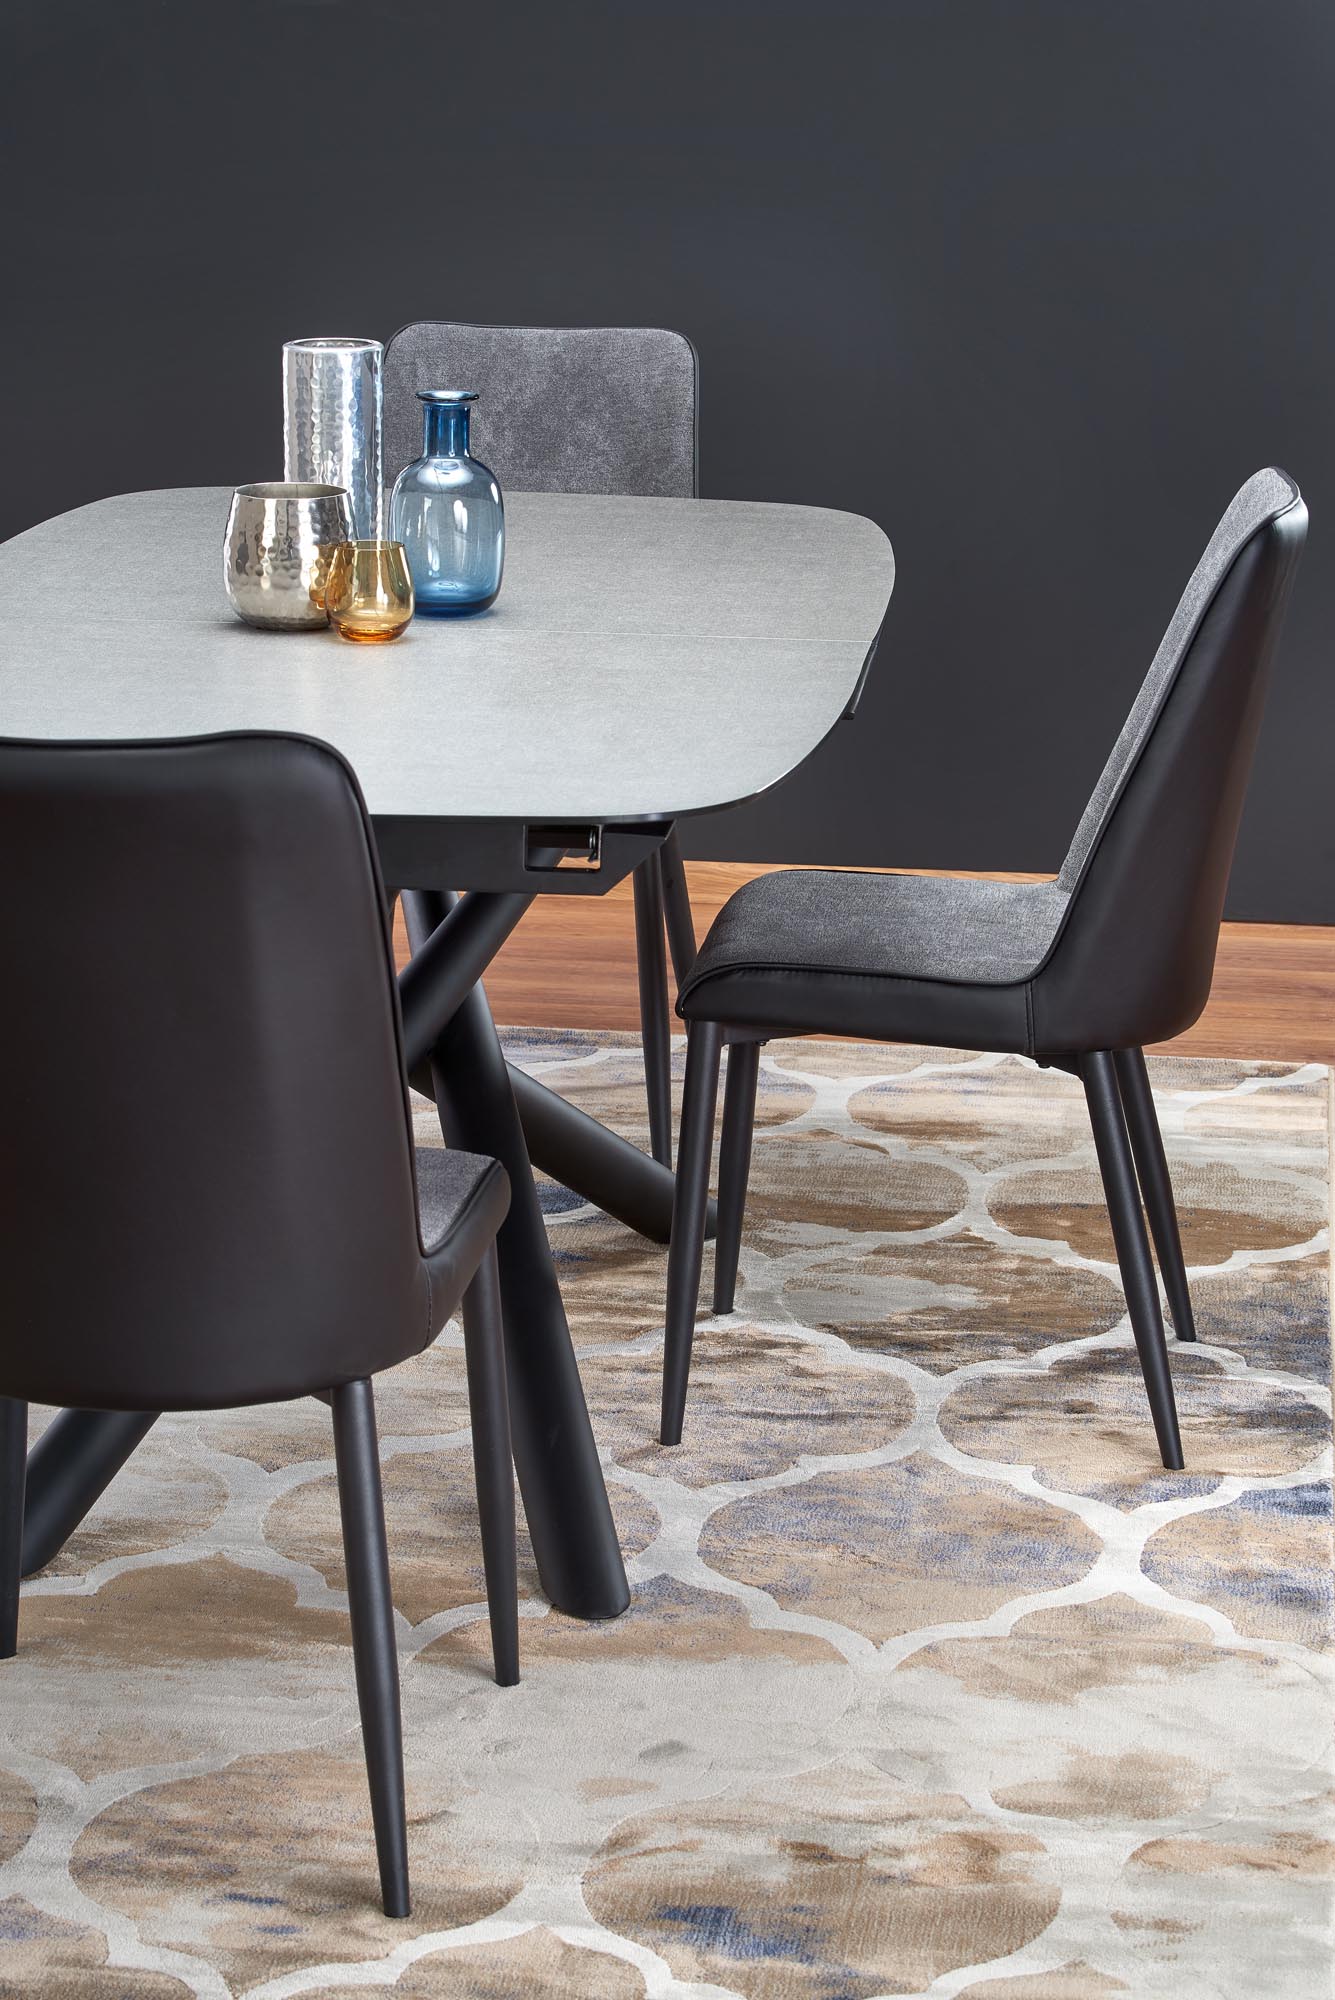 Rozkladací jedálenský stôl Capello 180-240x95 cm - tmavosivá / čierna Stôl rozkladany capello - tmavý popol / Čierny